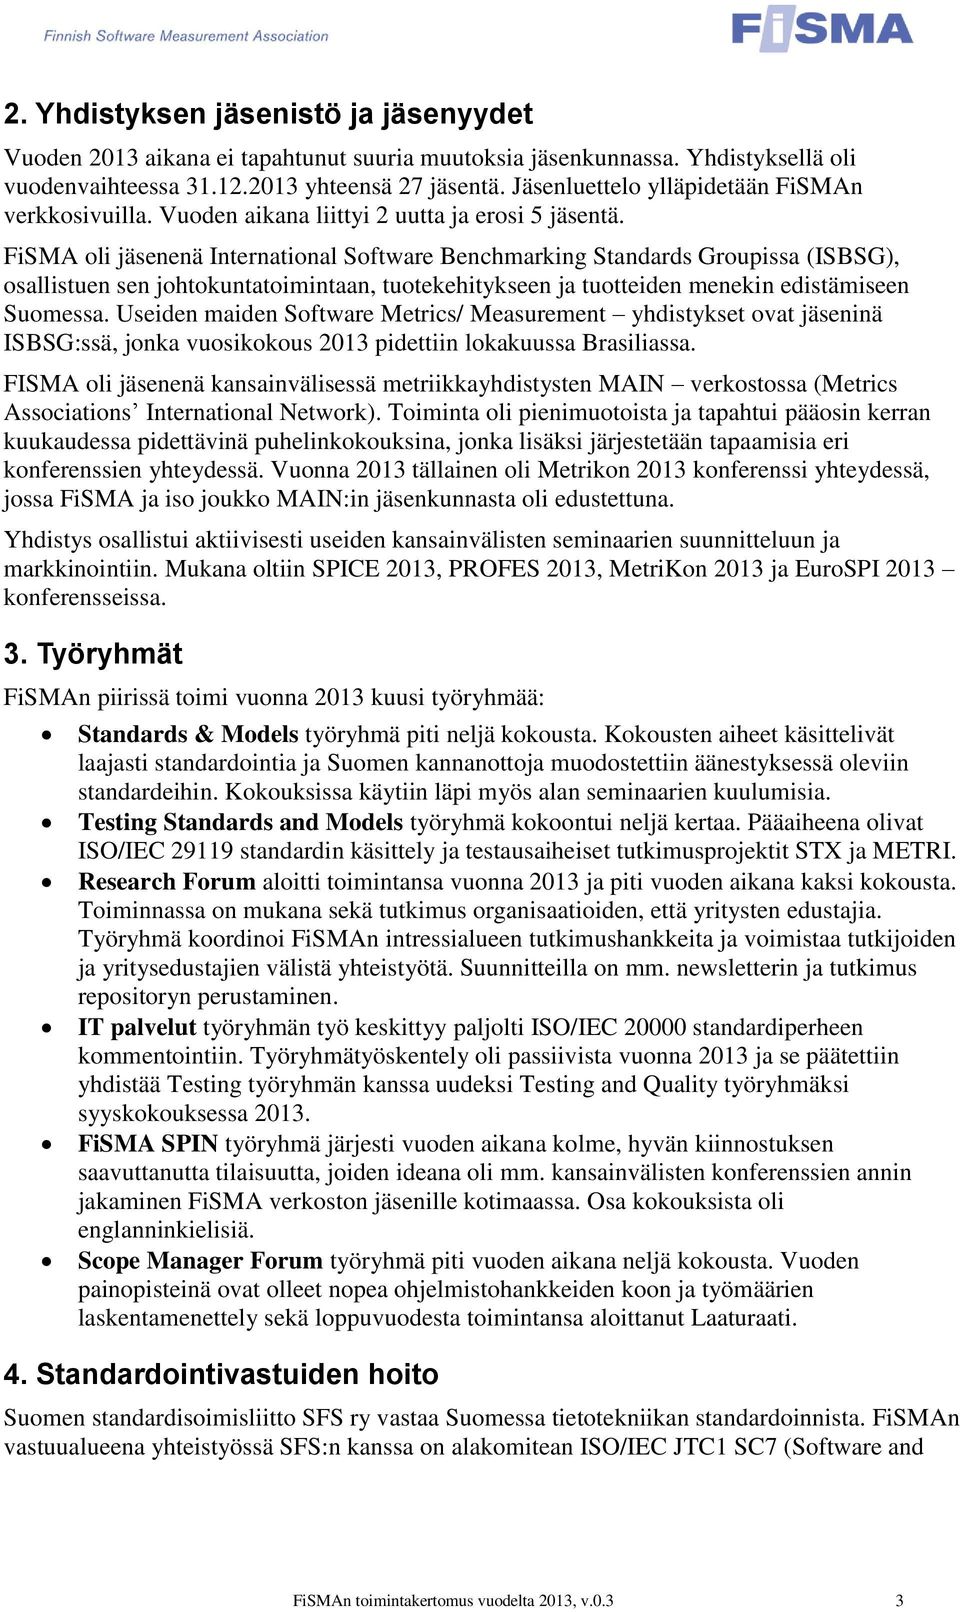 FiSMA oli jäsenenä International Software Benchmarking Standards Groupissa (ISBSG), osallistuen sen johtokuntatoimintaan, tuotekehitykseen ja tuotteiden menekin edistämiseen Suomessa.